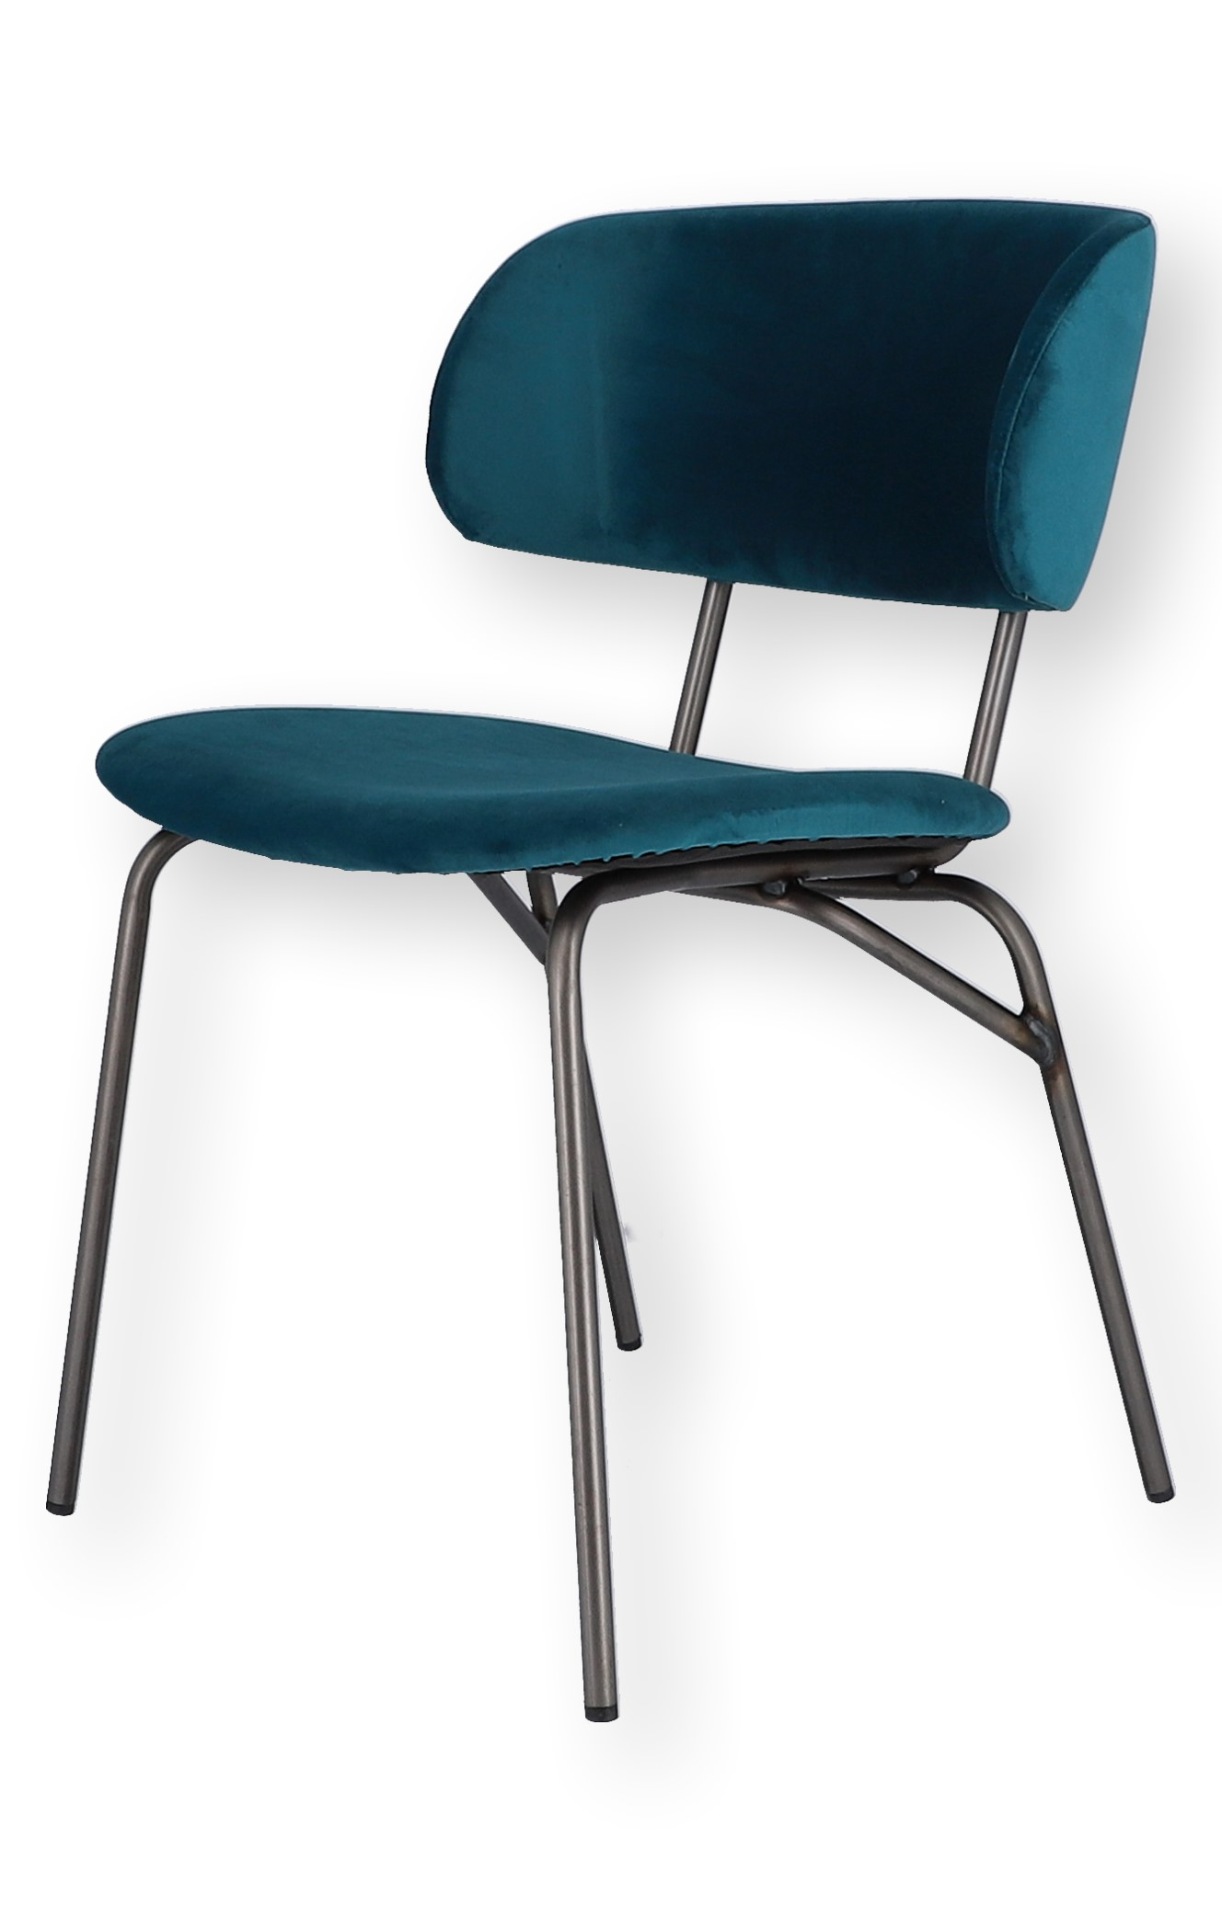 Der moderne Stuhl Giulia wurde aus einem Metall Gestell gefertigt. Die Sitz- und Rückenfläche ist aus einem Samt Bezug. Der Stuhl hat eine türkise Farbe und ist von der Marke Jan Kurtz.